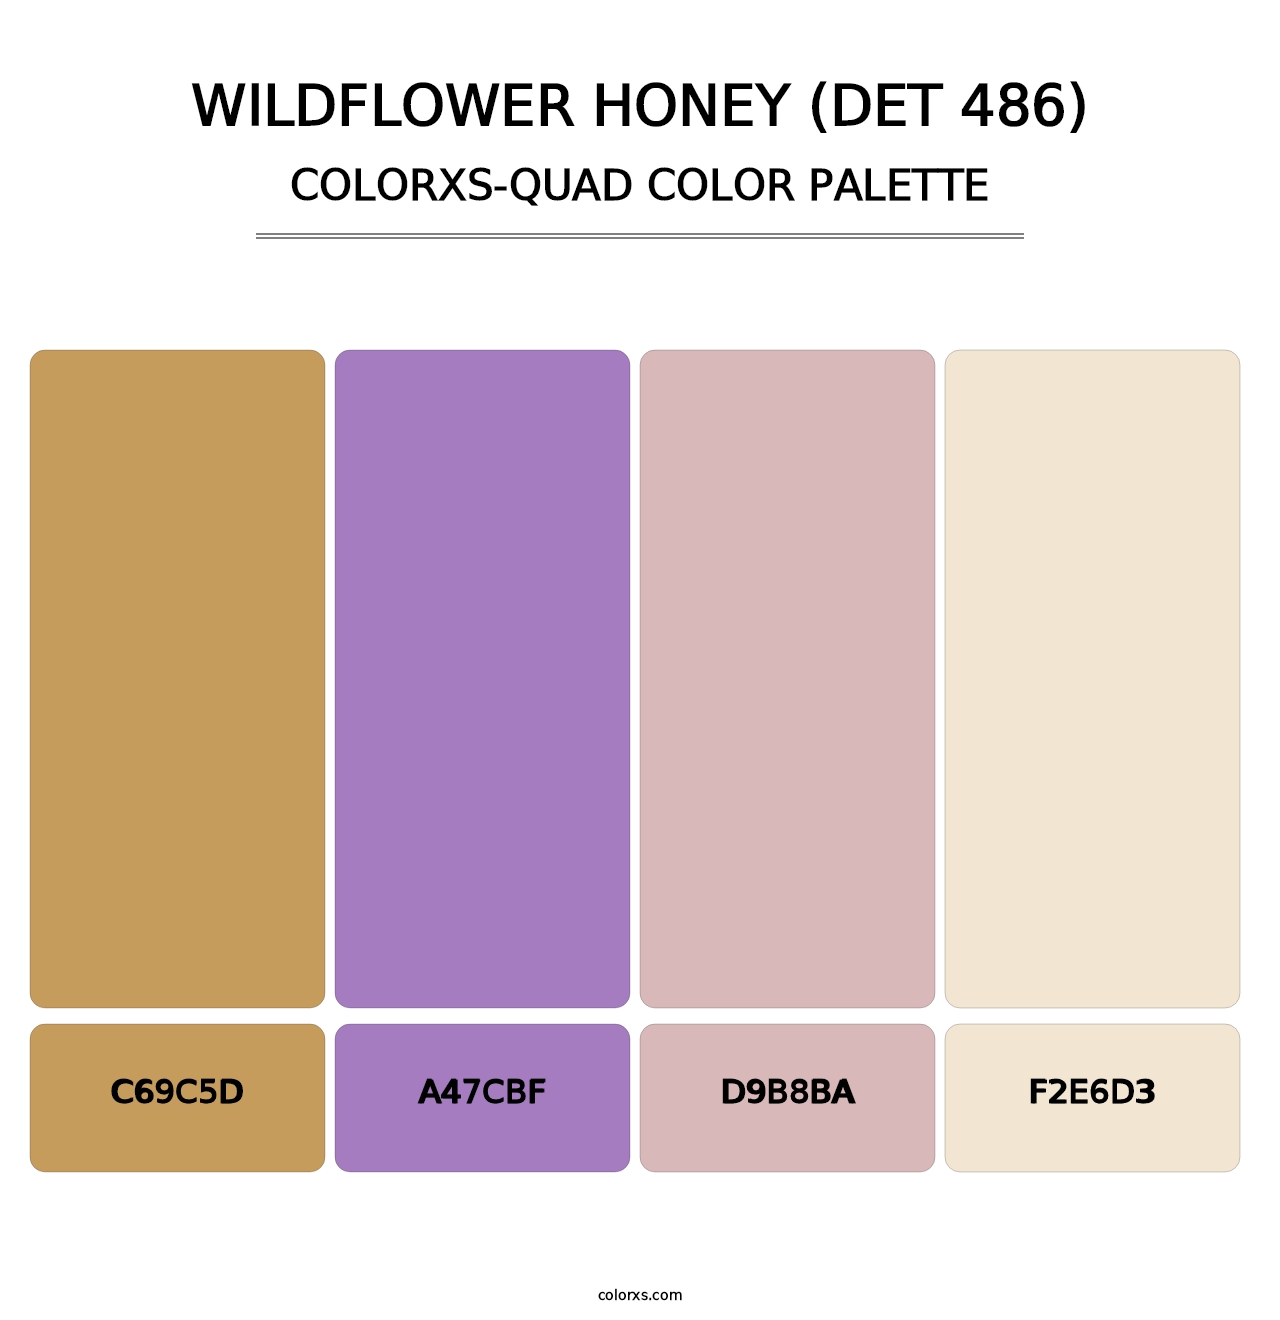 Wildflower Honey (DET 486) - Colorxs Quad Palette